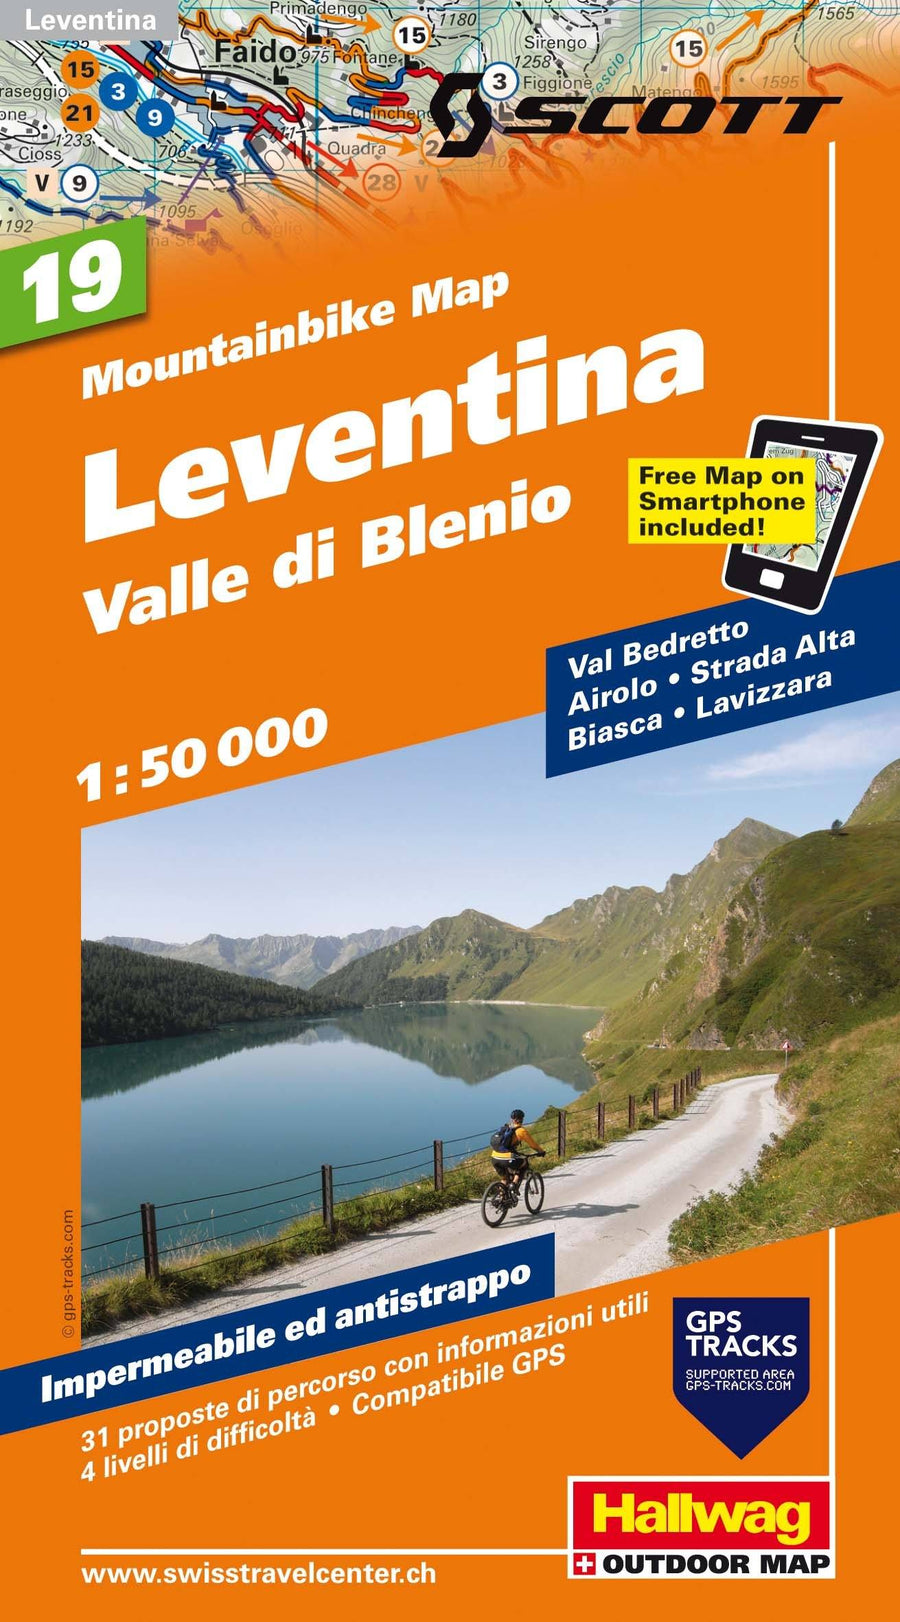 Carte spéciale VTT n° WKM.19 - Leventina, Valle die Blenio (Suisse) | Hallwag carte pliée Hallwag 